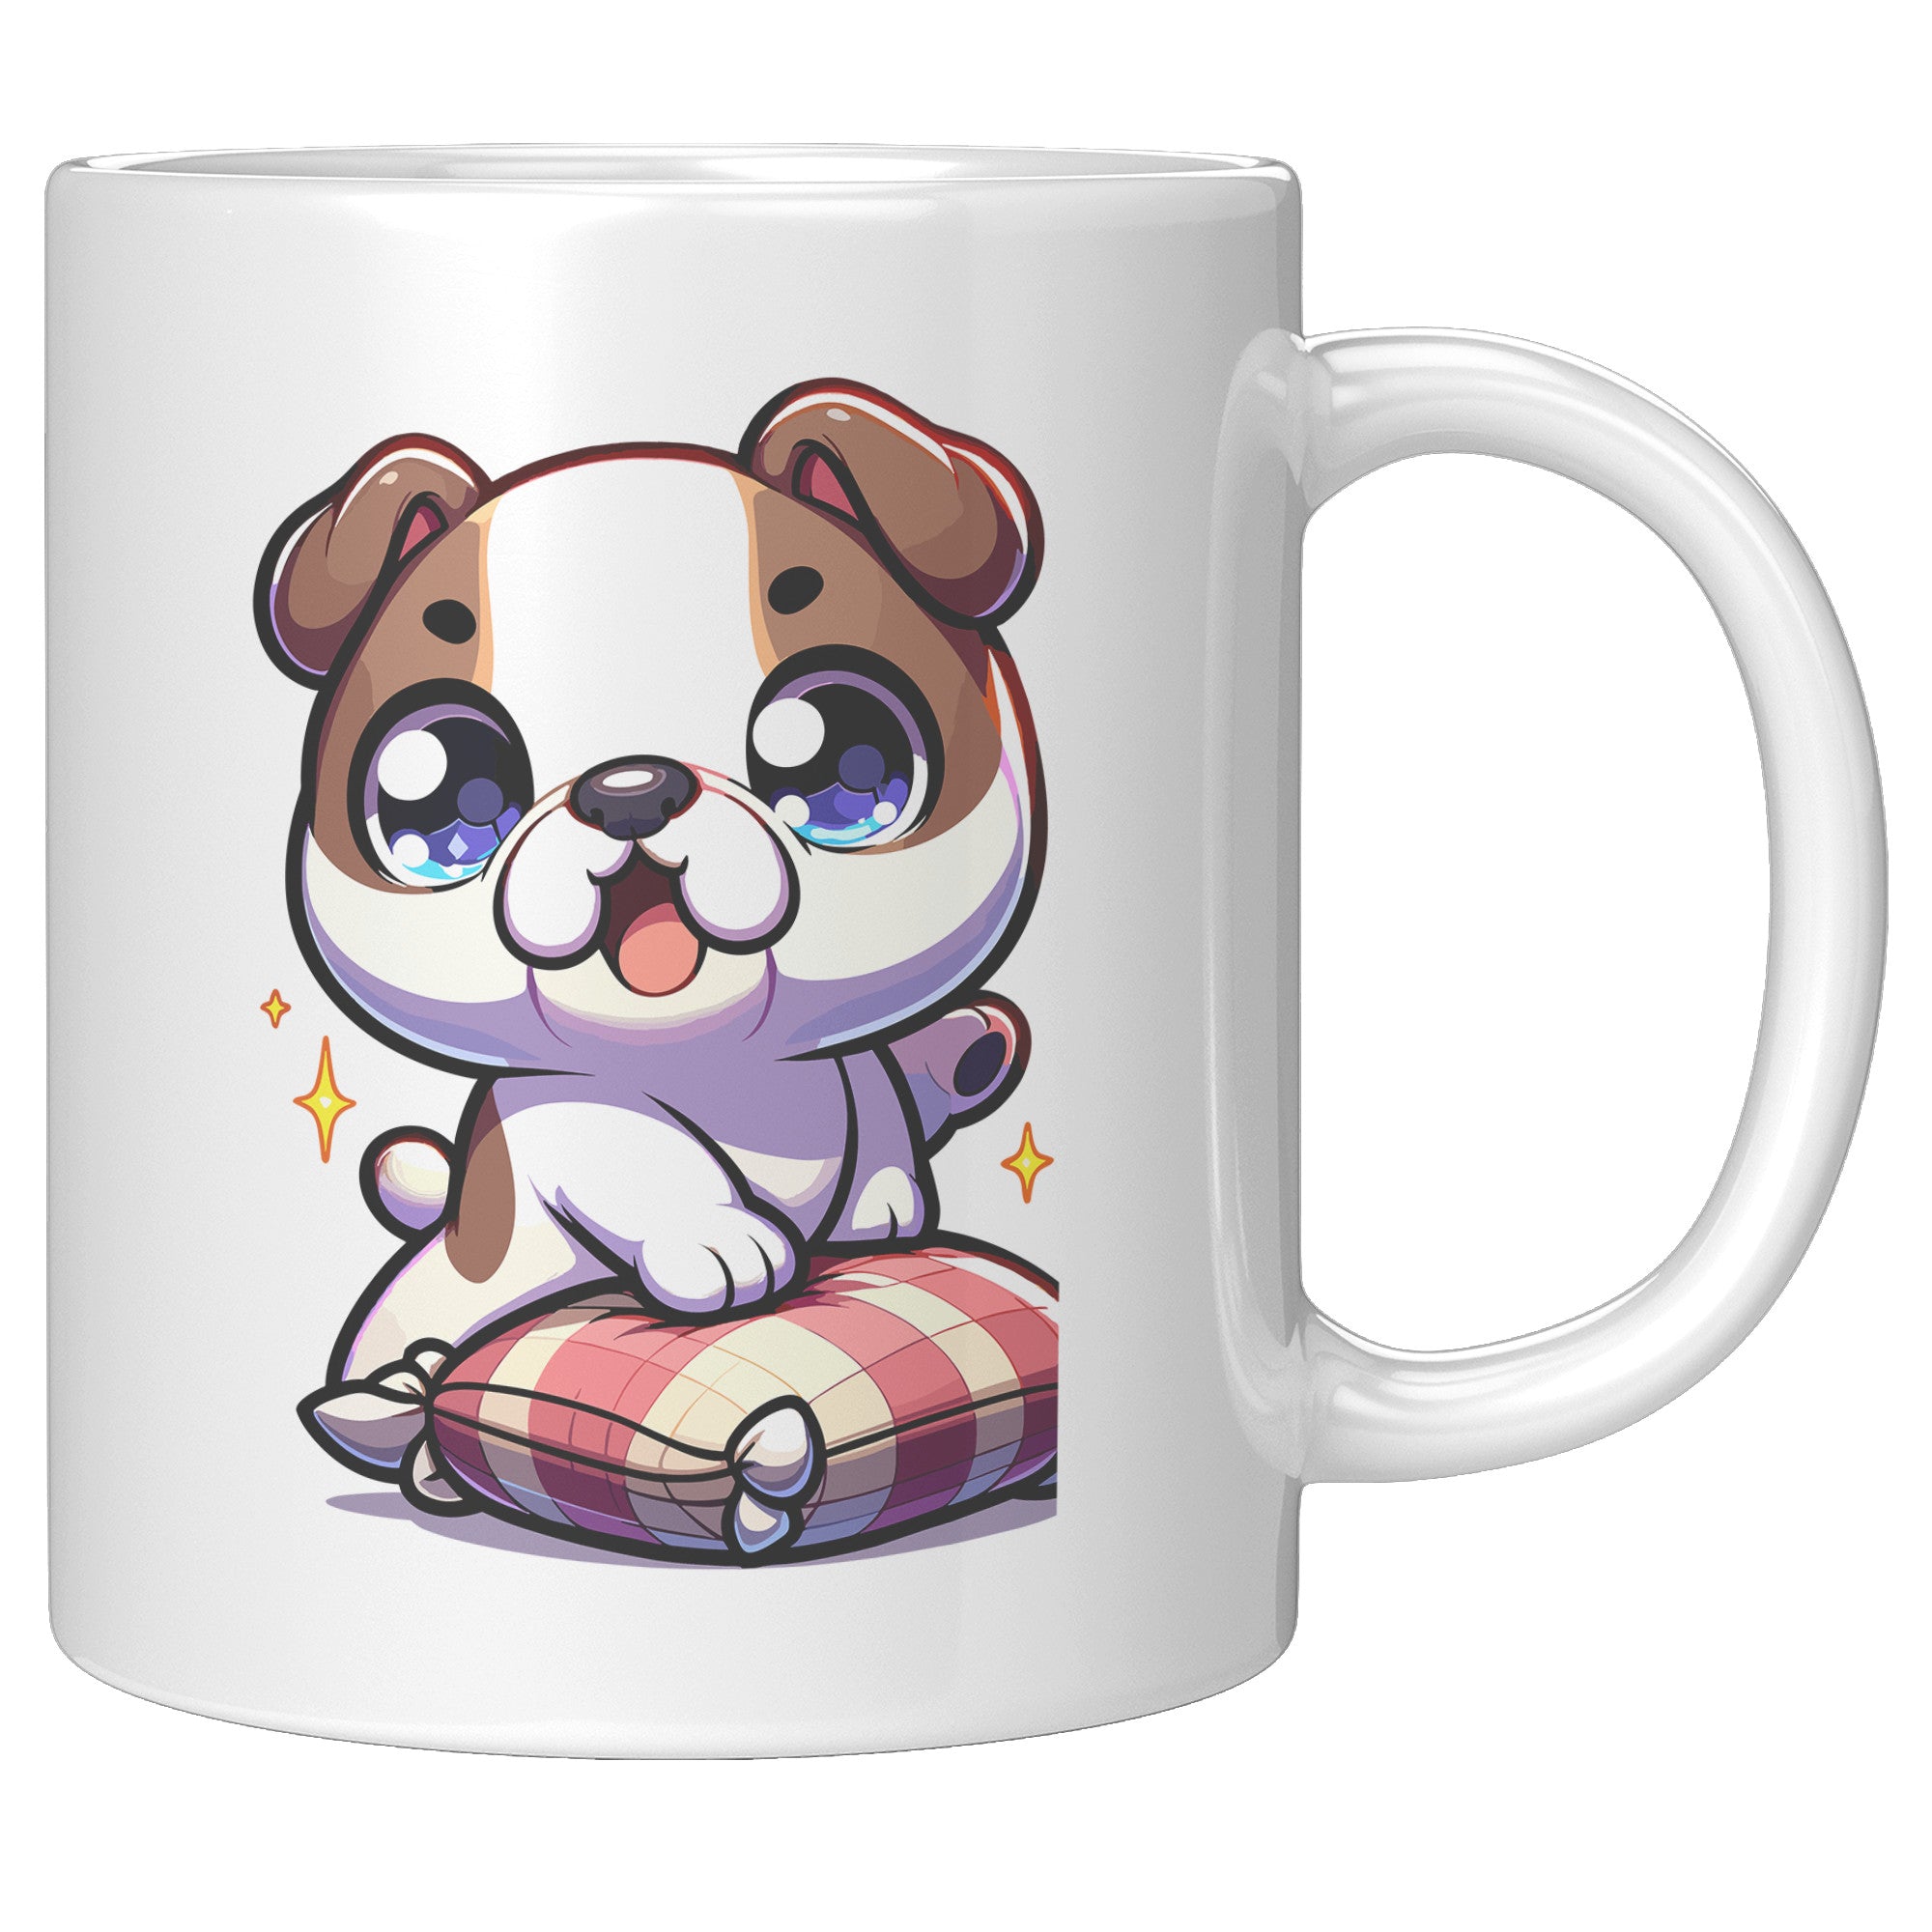 11oz French Bulldog Cartoon Coffee Mug - Frenchie Lover Coffee Mug - Perfect Gift for French Bulldog Owners - Adorable Bat-Eared Dog Coffee Mug - N